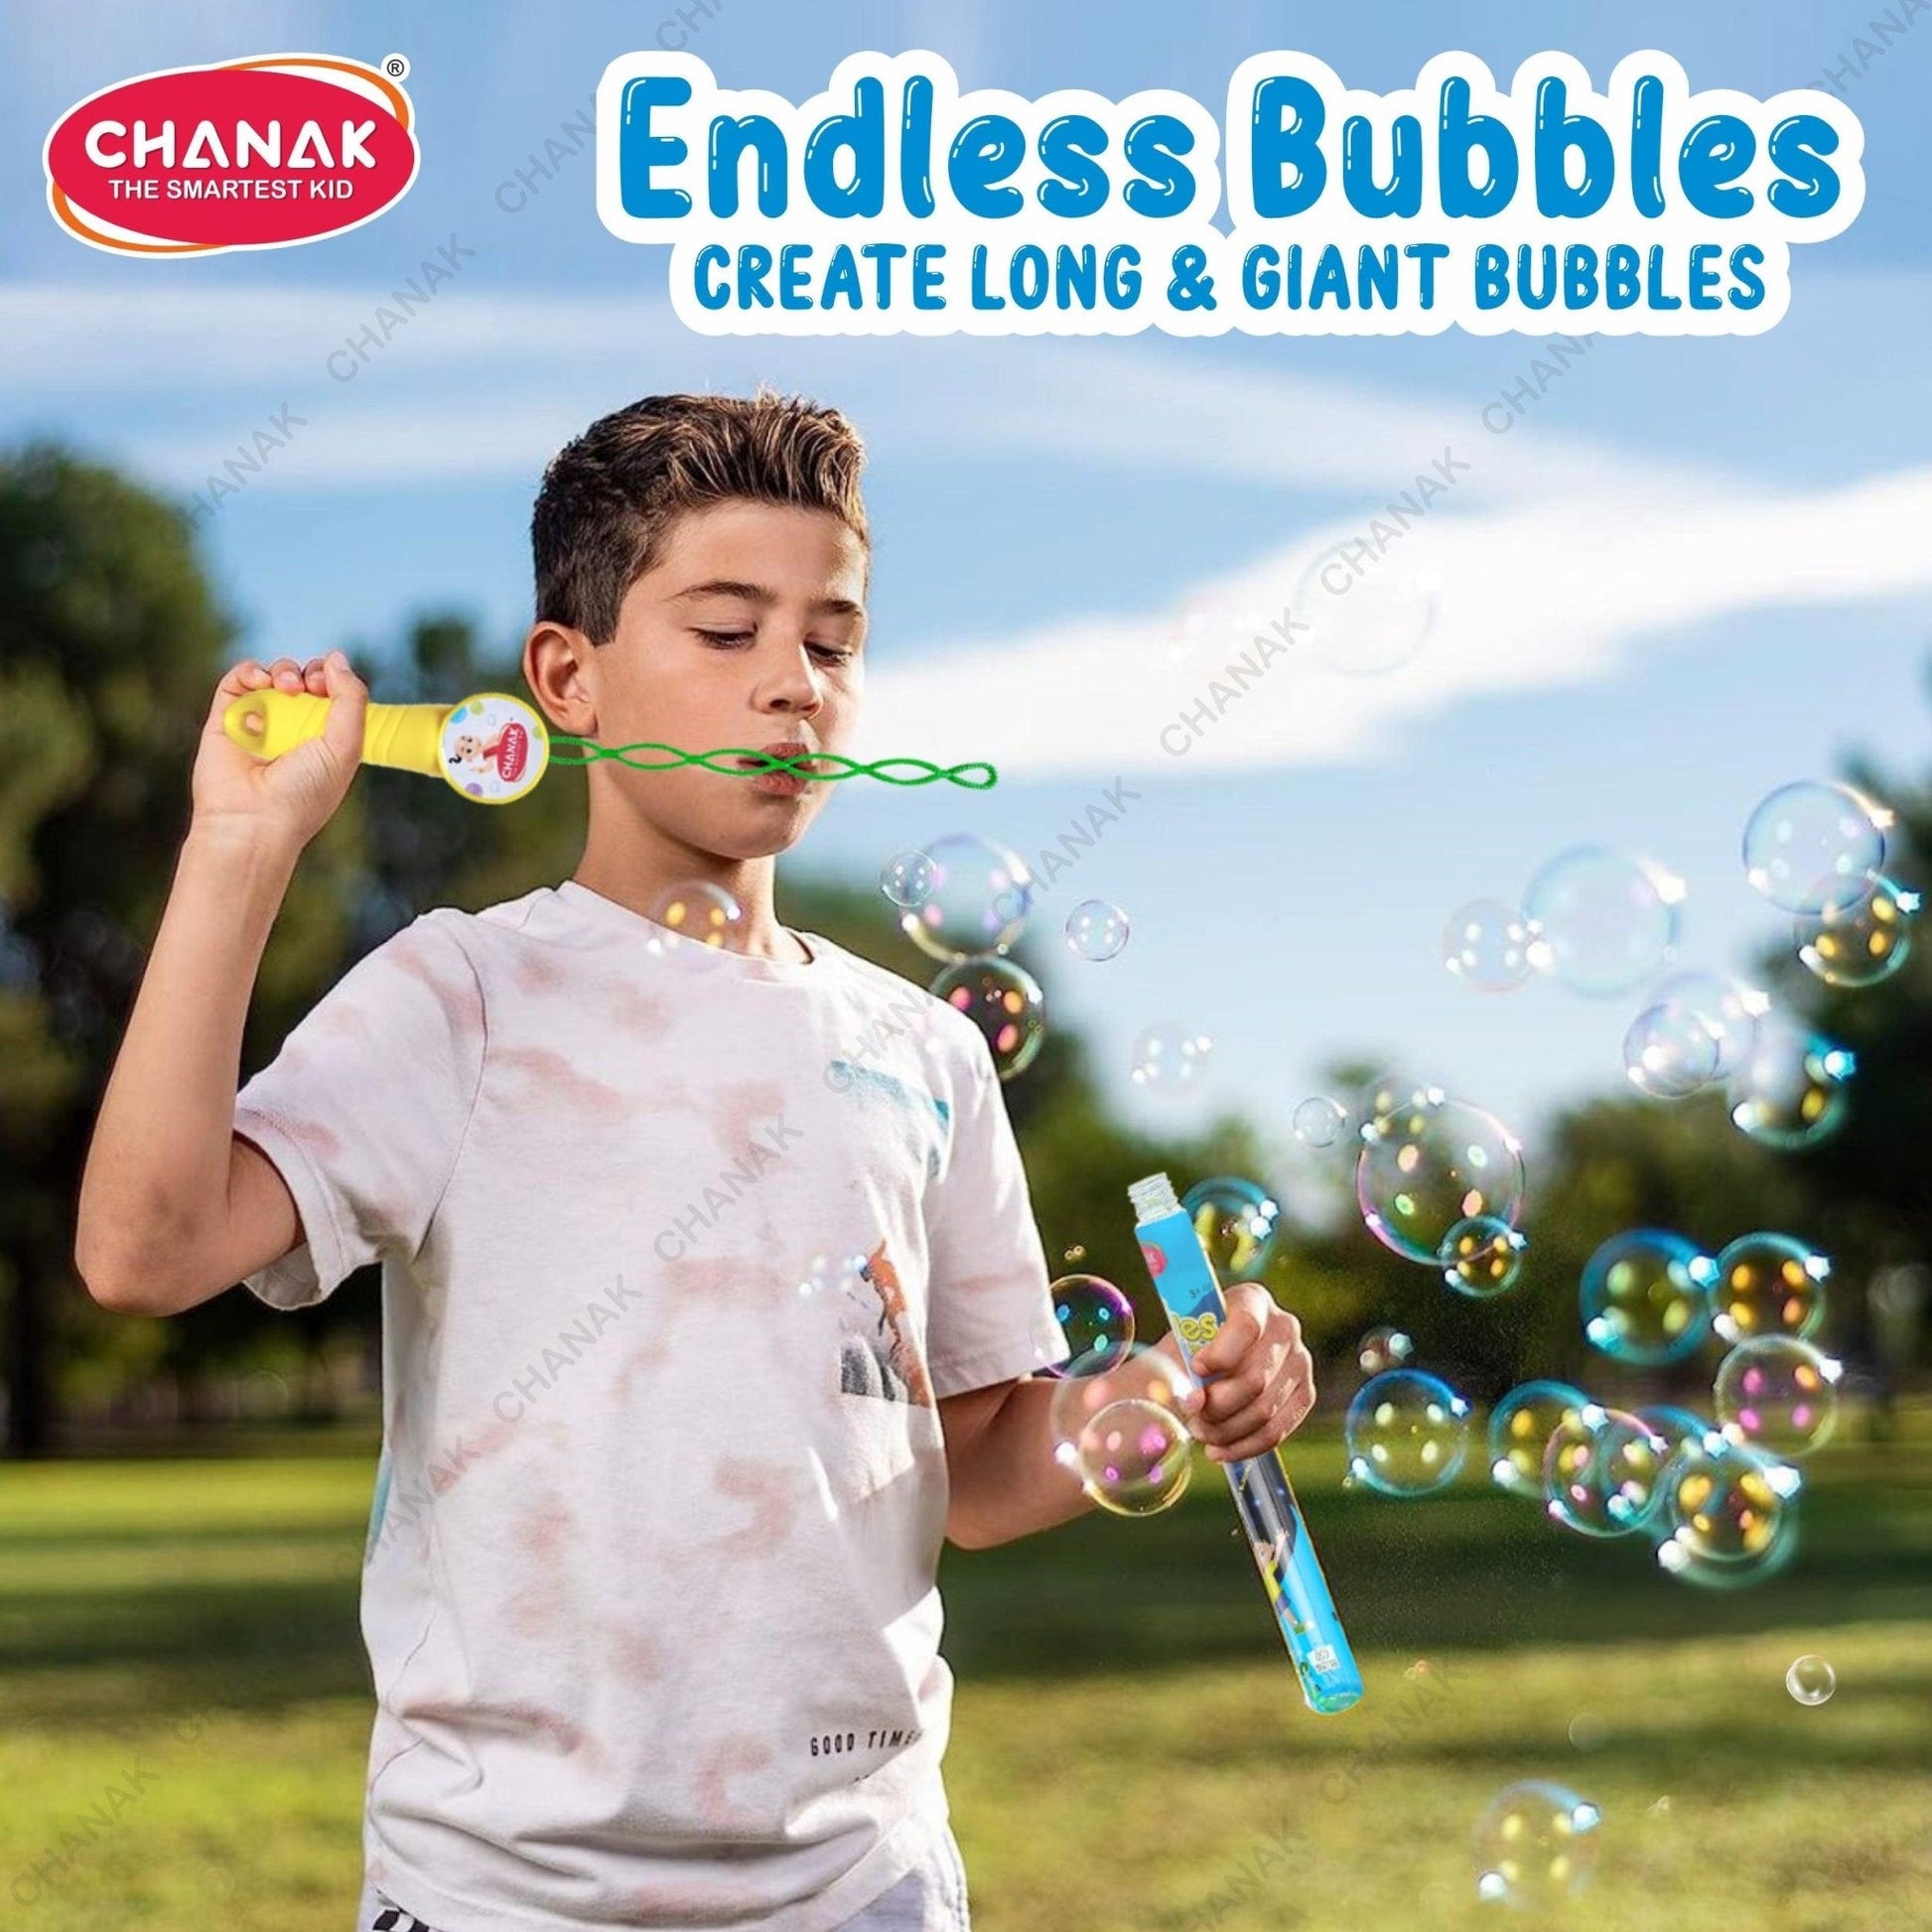 Chanak's Premium Bubble Wands for Kids - chanak